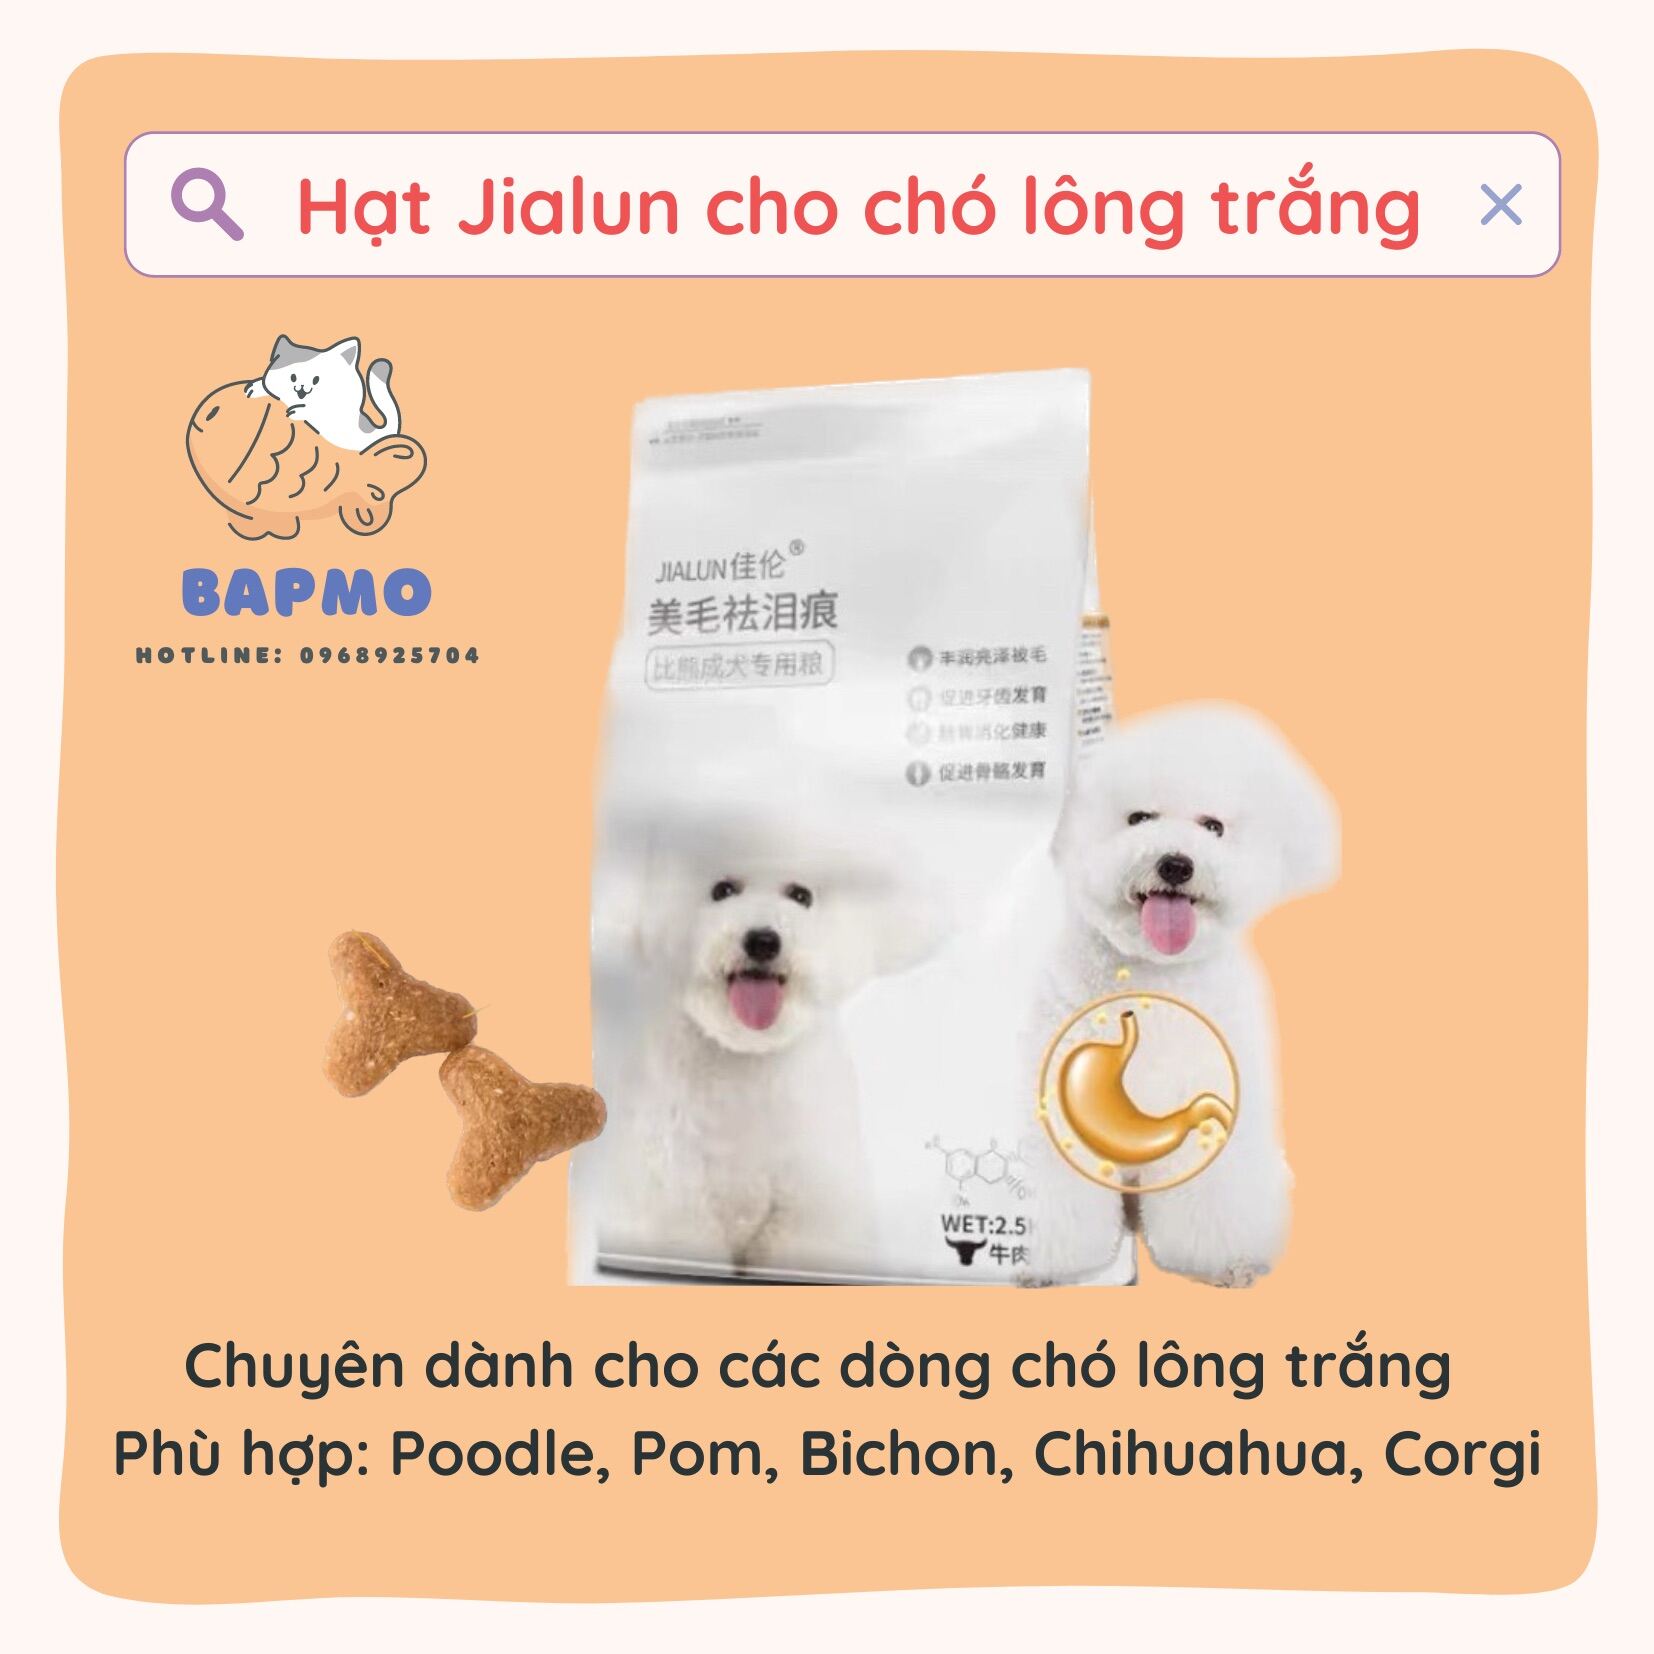 Hạt Jialun ĐẶC BIỆT dành riêng cho chó lông trắng - Túi 2.5kg